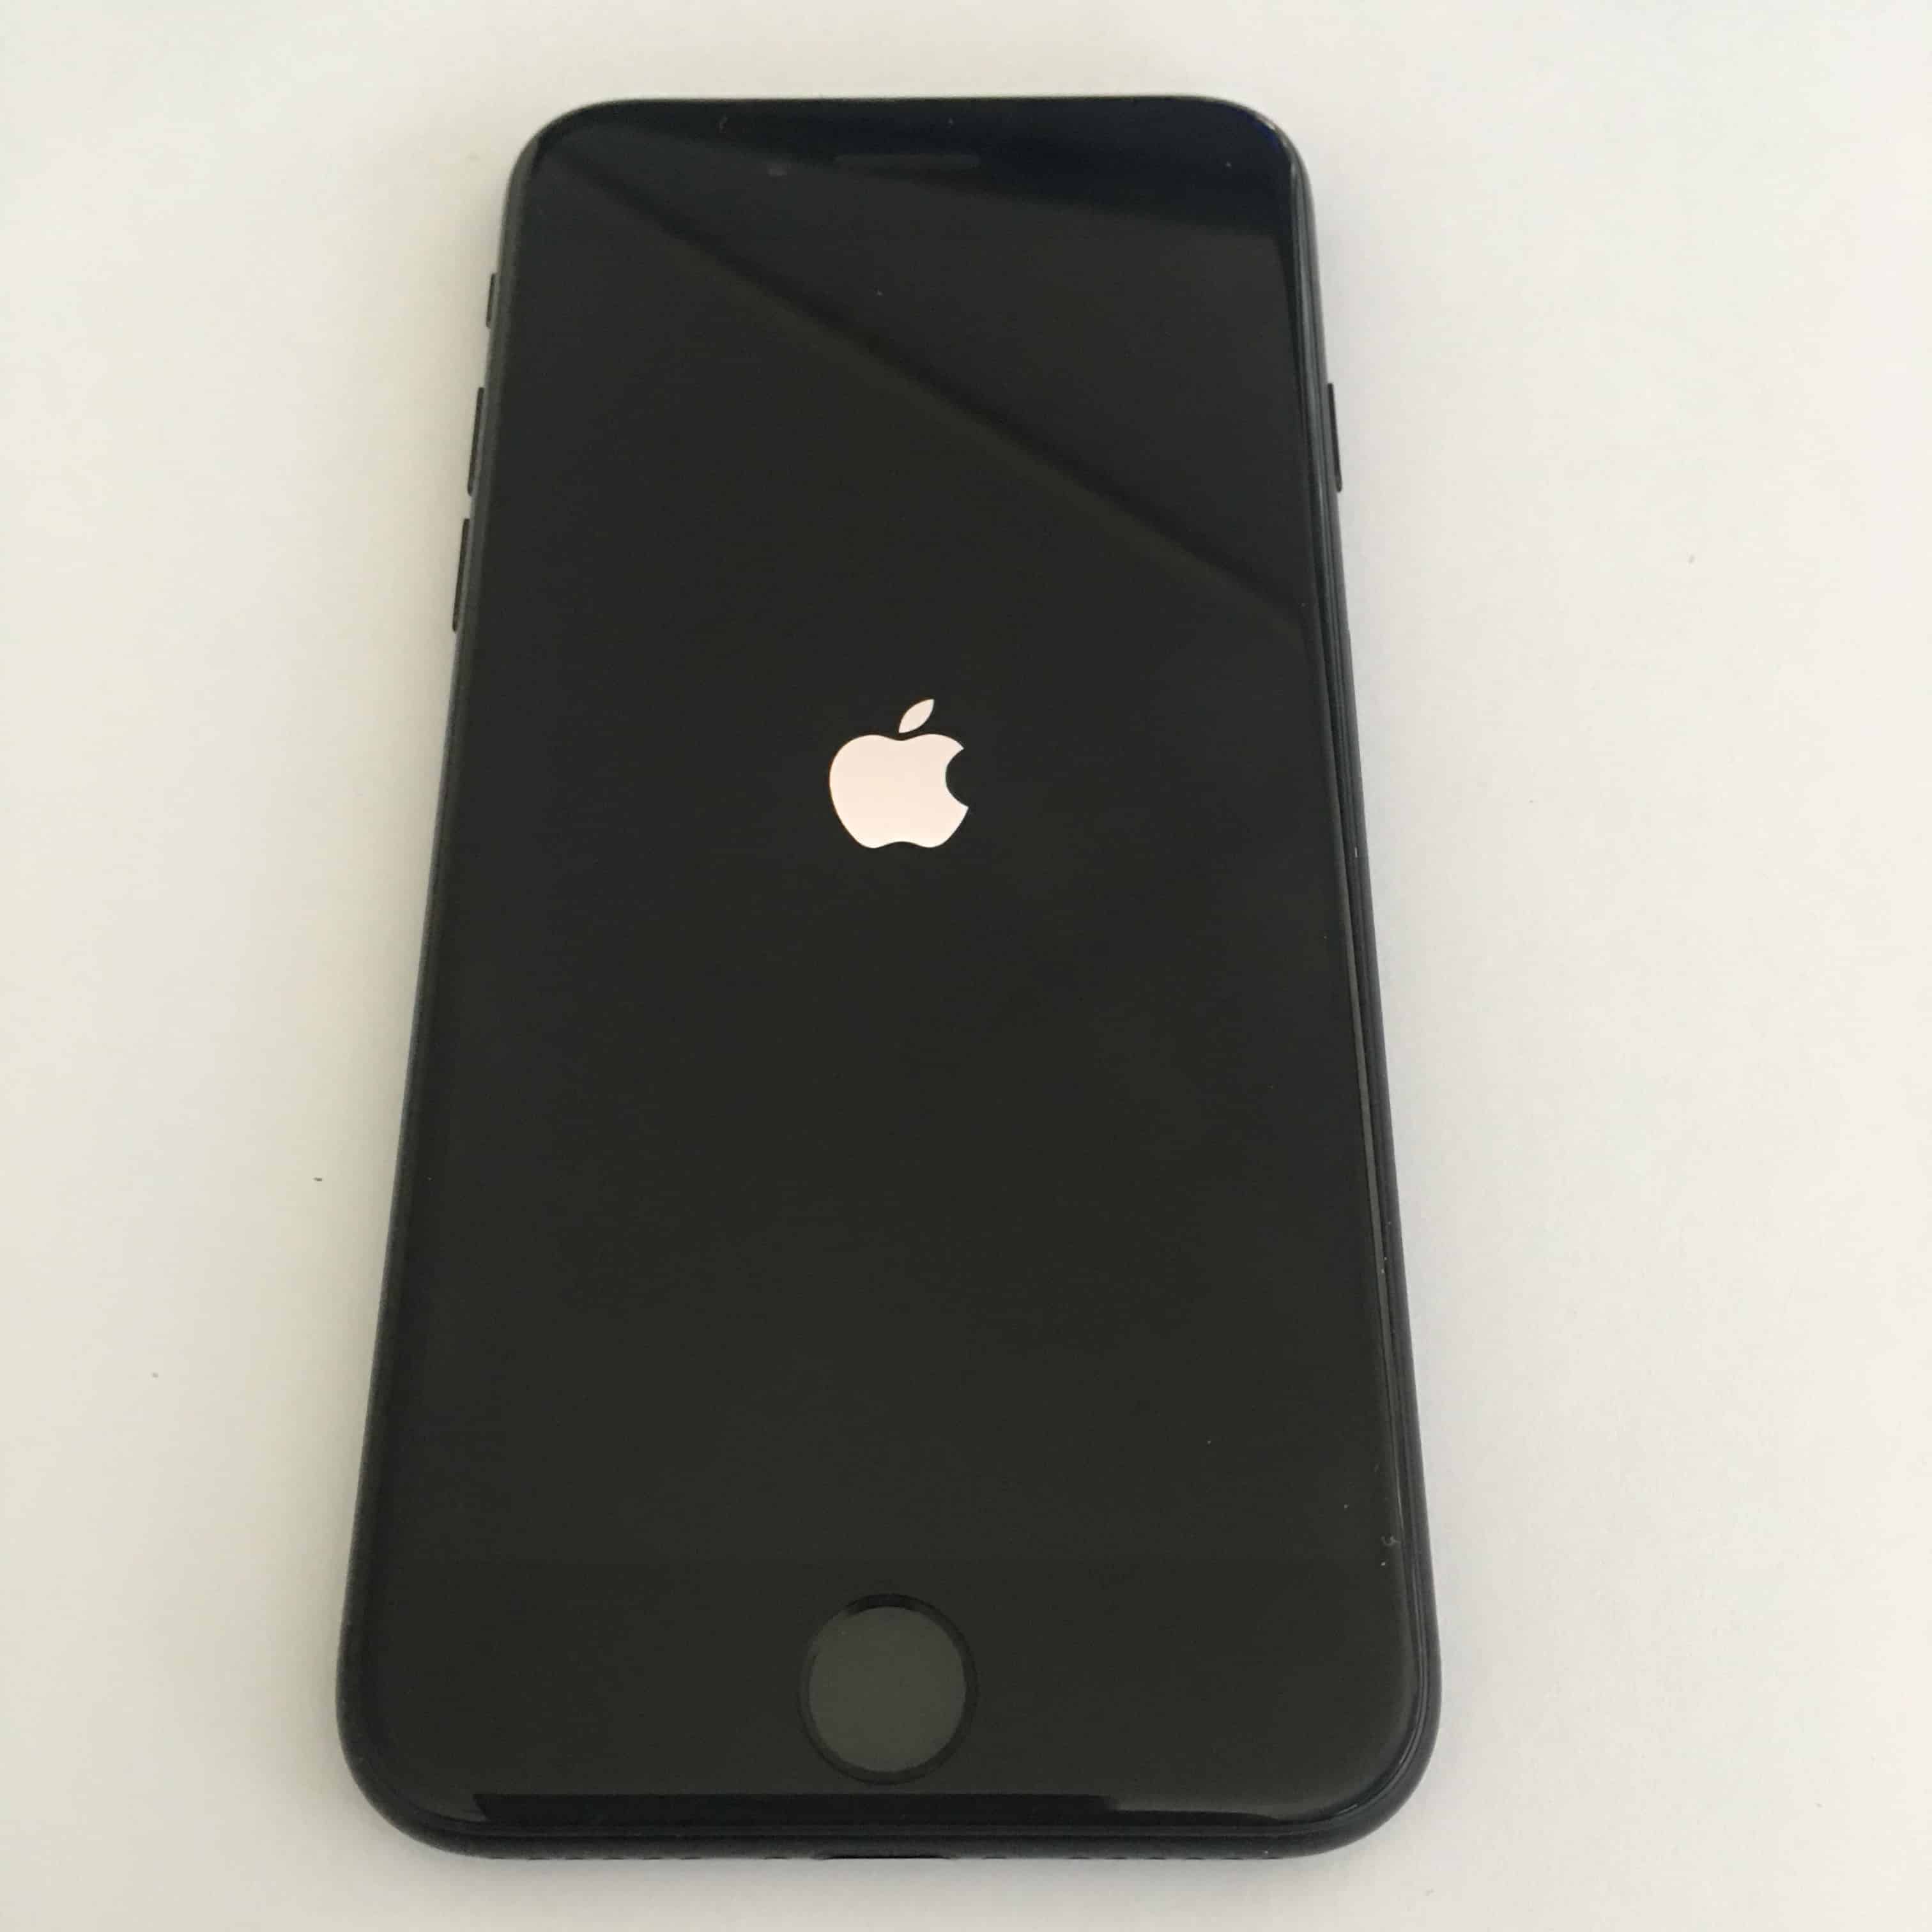 iPhone 7 – Enttäuschendes Aussehen